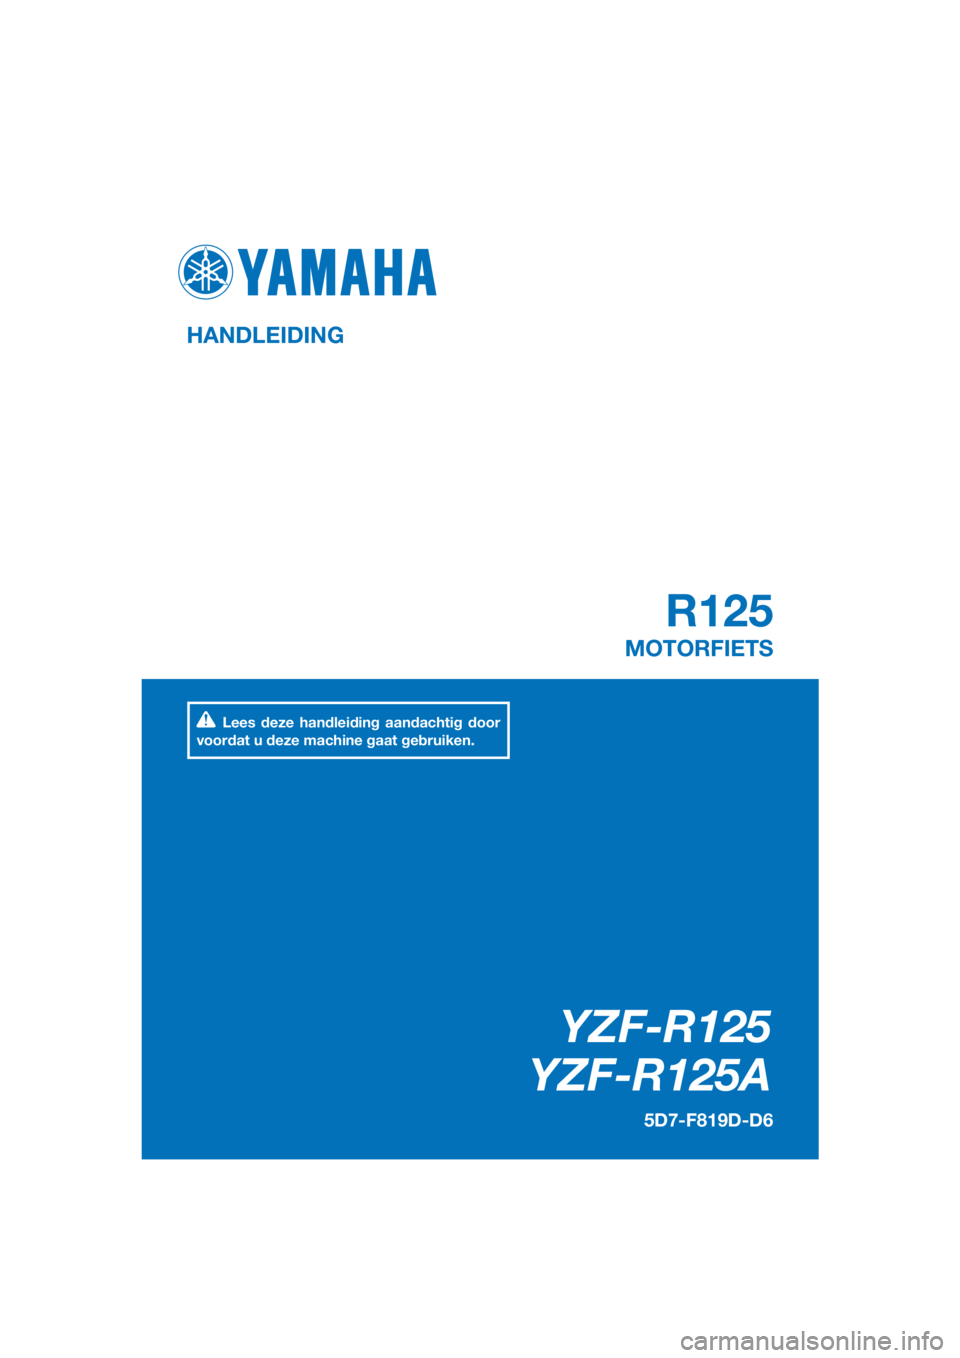 YAMAHA YZF-R125 2016  Instructieboekje (in Dutch) PANTONE285C
YZF-R125
YZF-R125A
R125
HANDLEIDING
5D7-F819D-D6
MOTORFIETS
Lees deze handleiding aandachtig door 
voordat u deze machine gaat gebruiken.
[Dutch  (D)] 